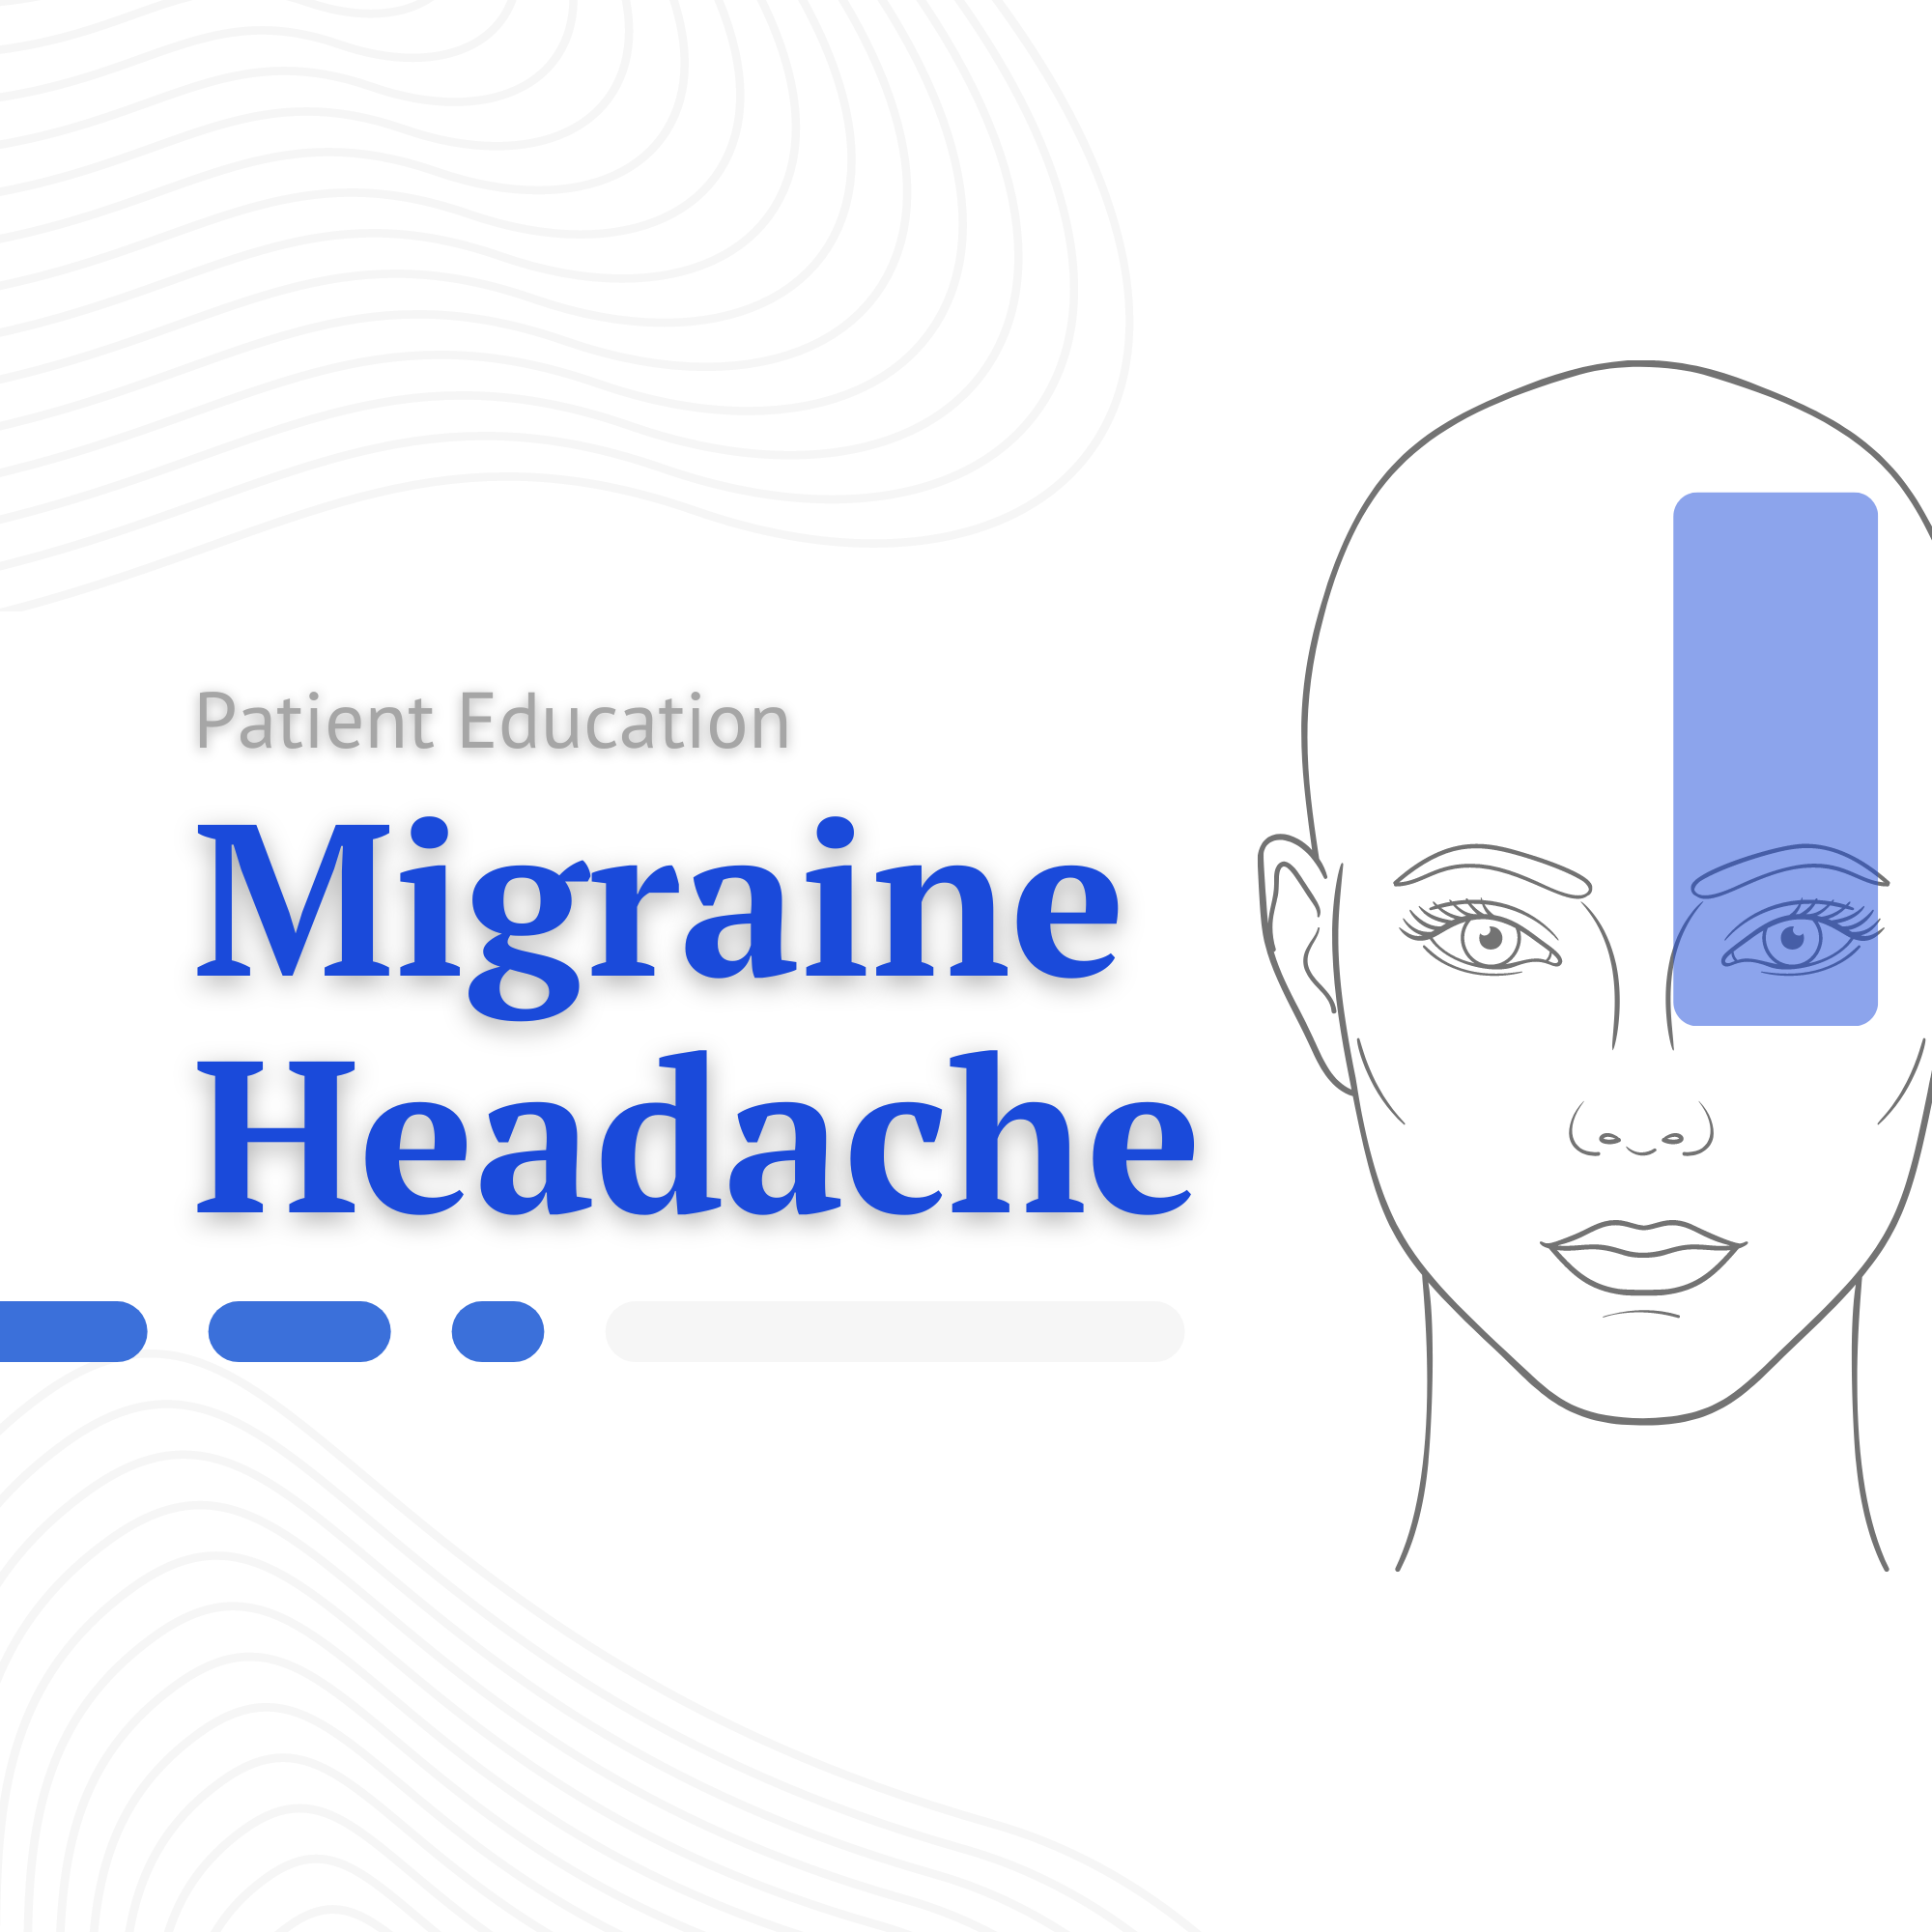 Migraine Headache Cover Photo.png